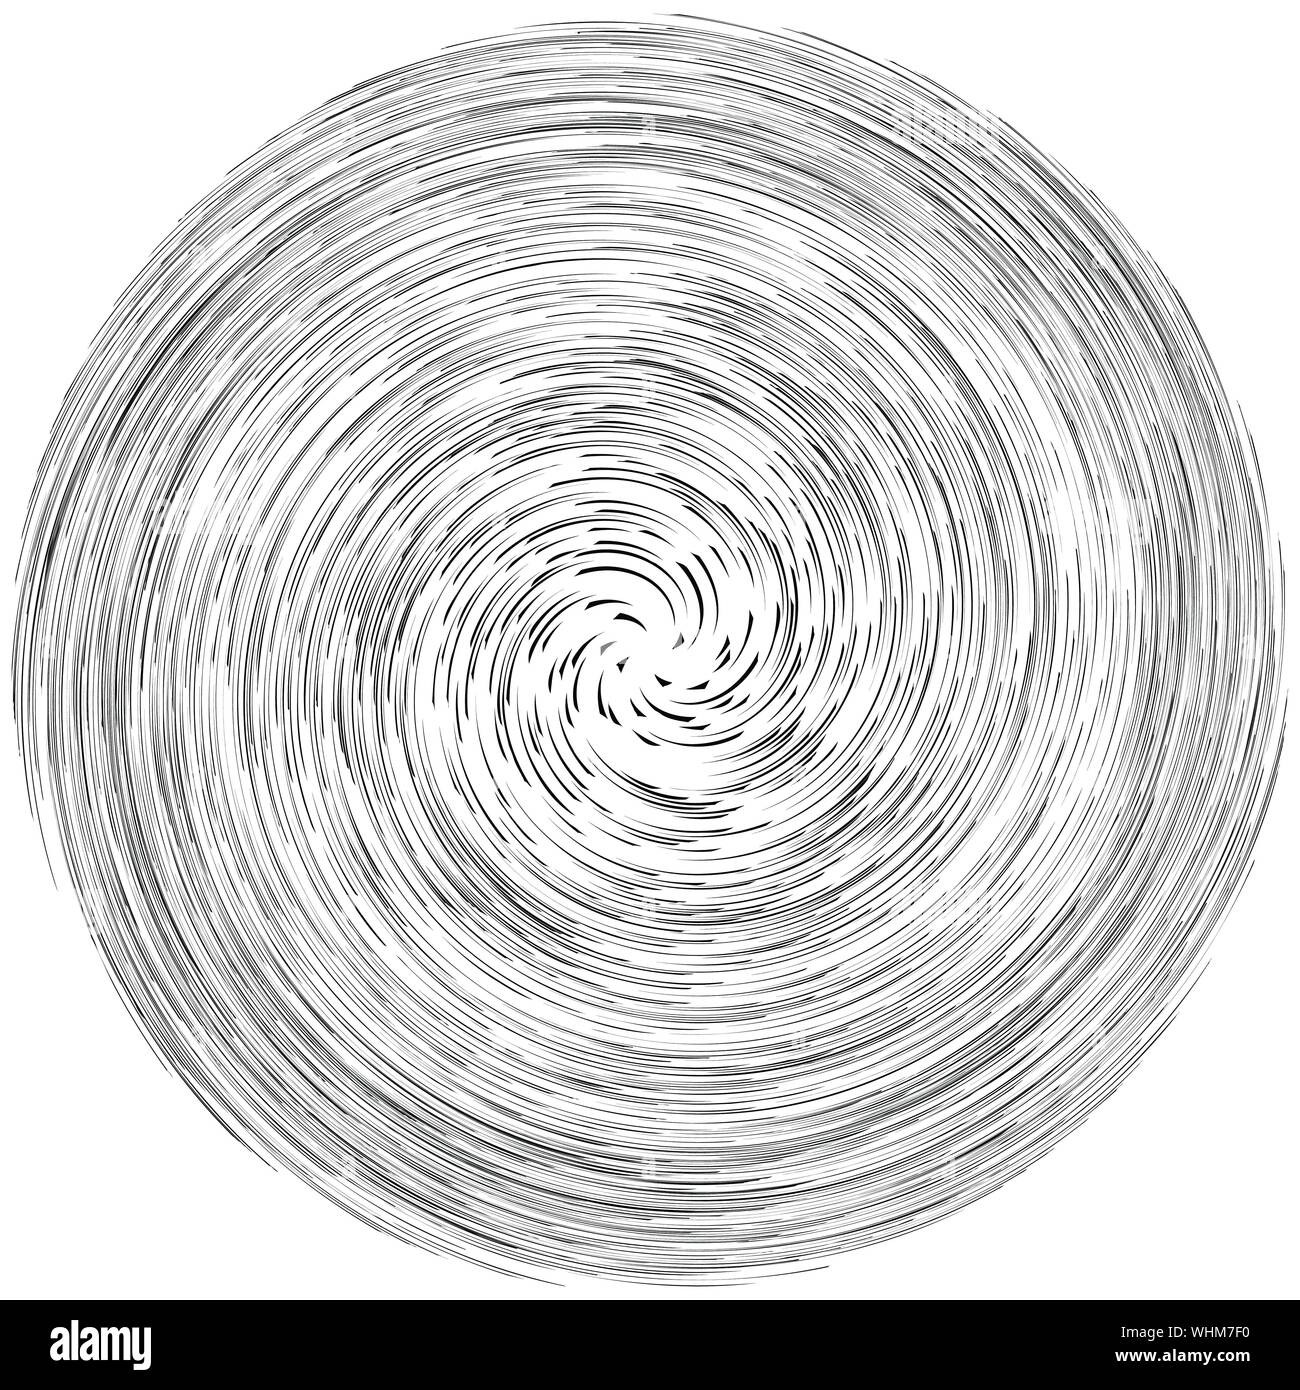 Detaillierte twirl, Spirale Element. Whirlpool, whirligig Wirkung. Runde, sich drehende burst Linien. Whirl radiale Design. Spule, Twirl abstrakte Form Stock Vektor